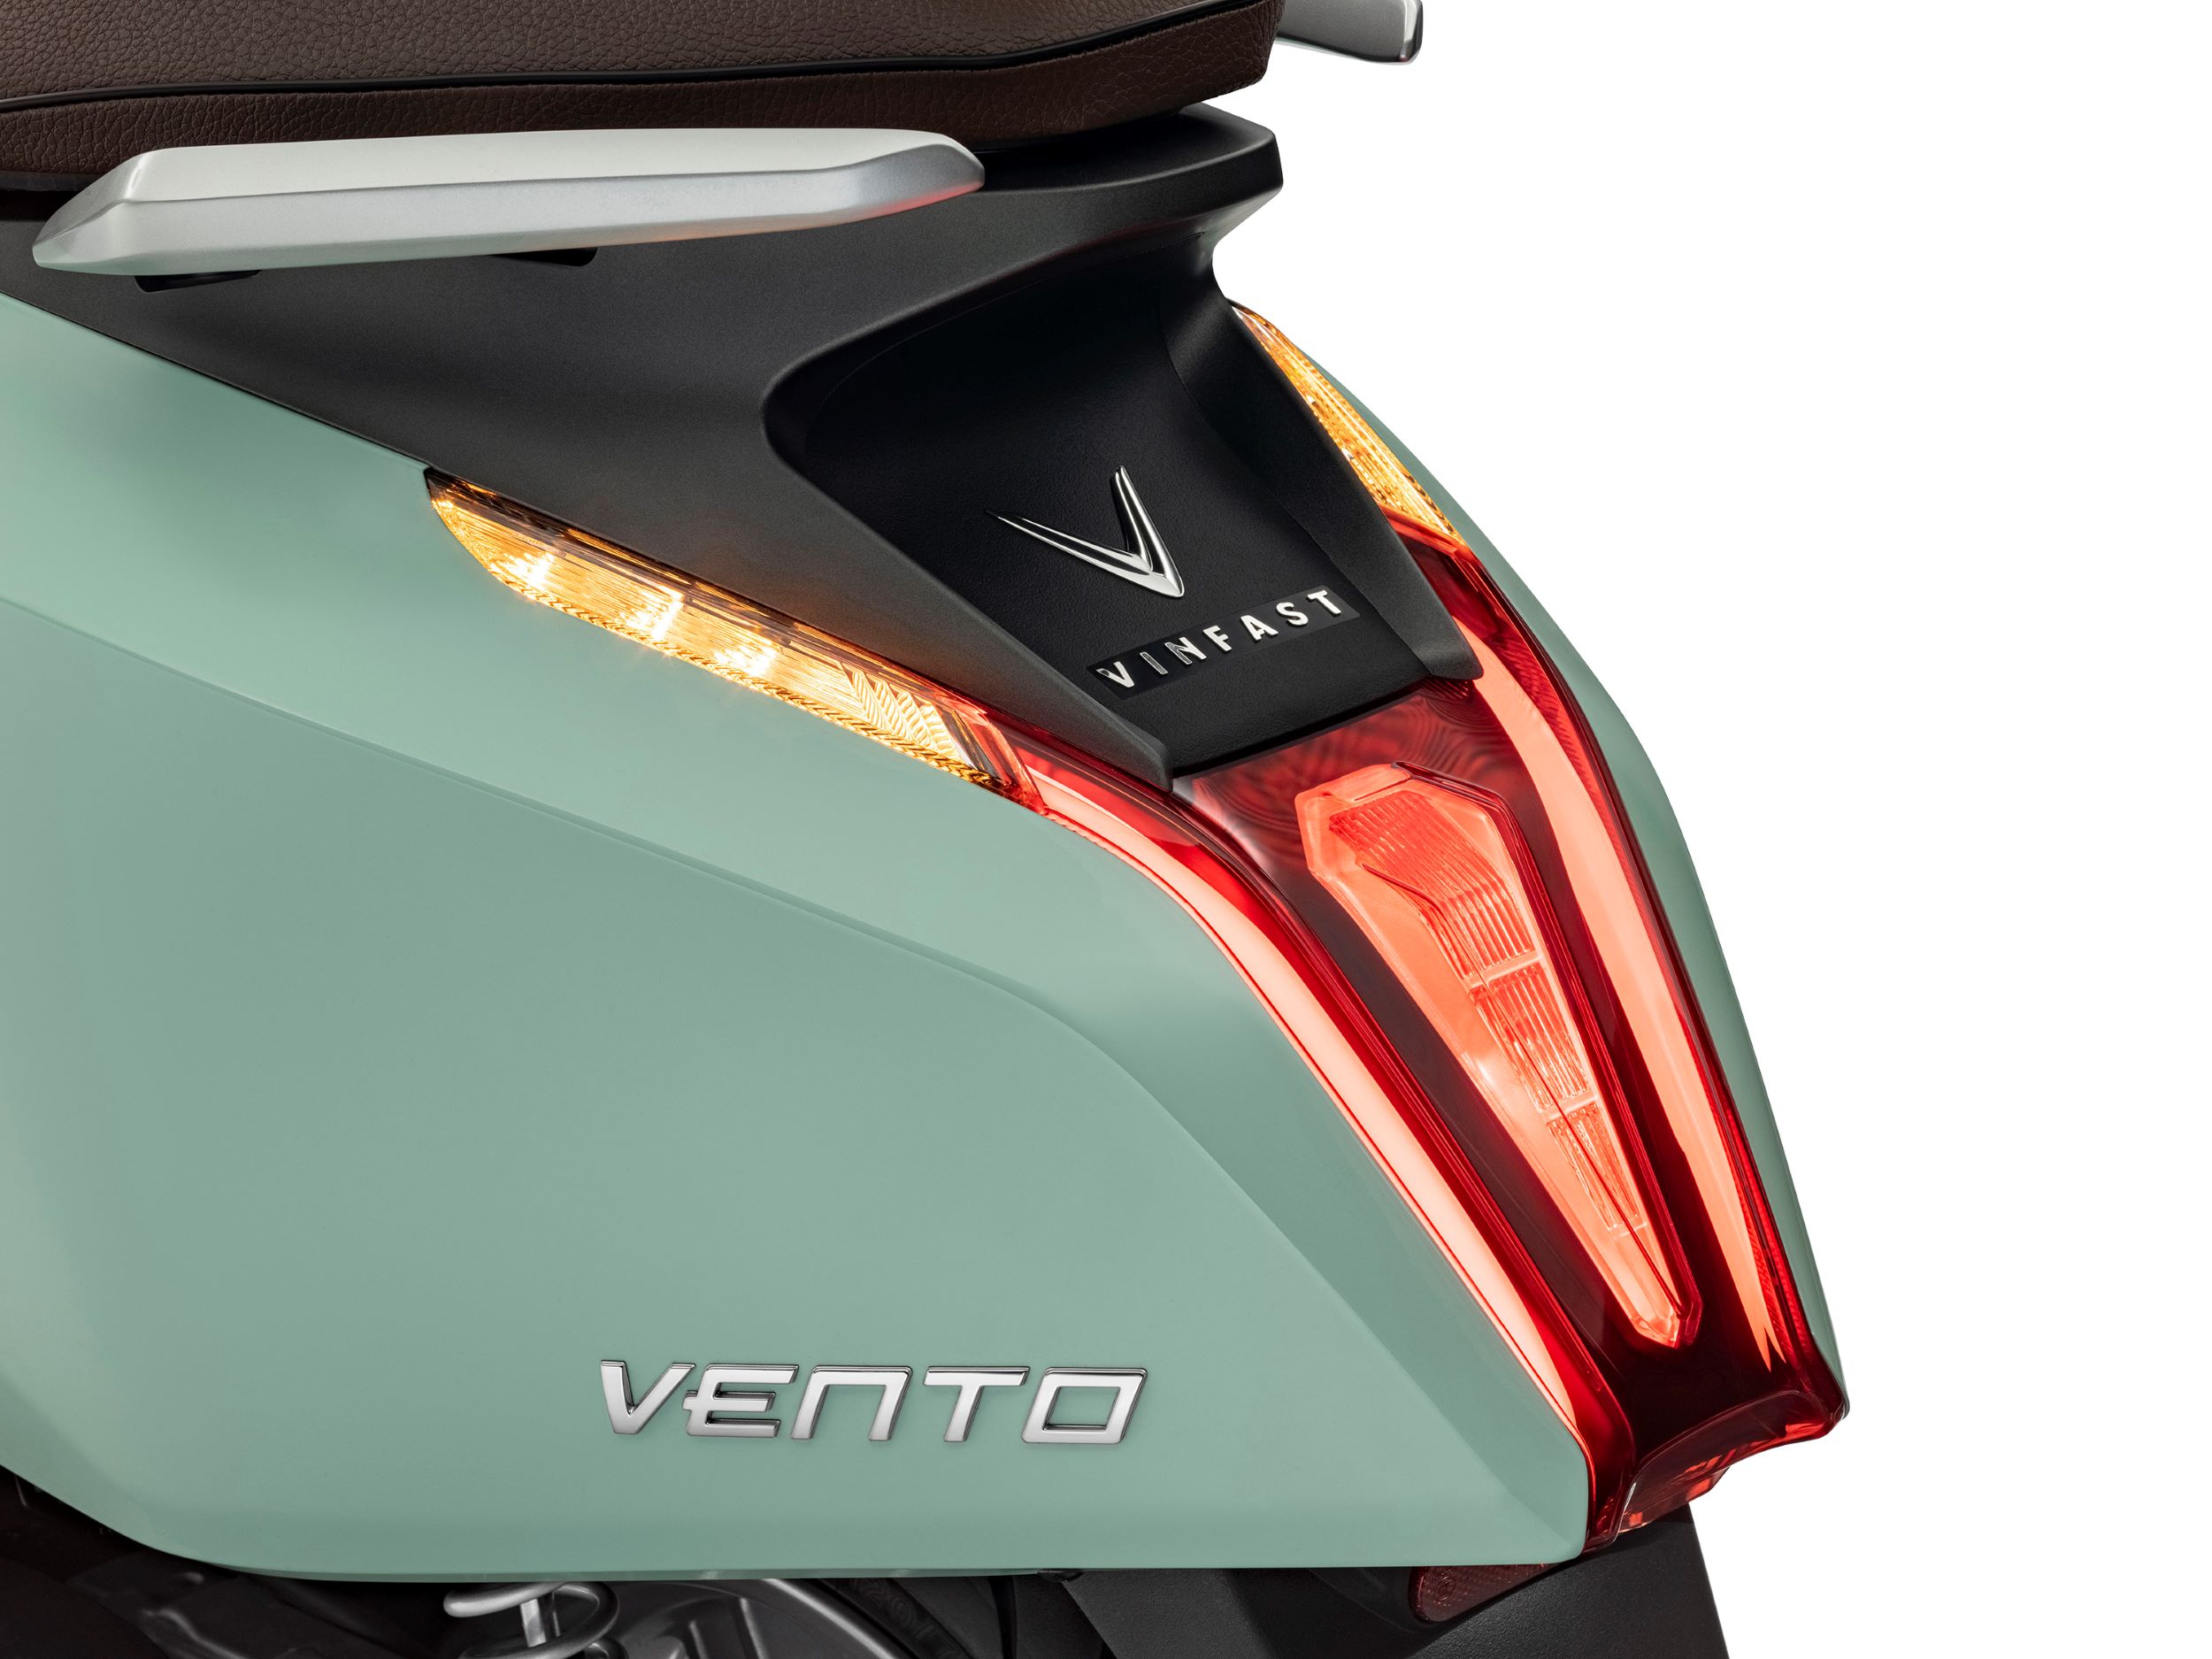 Kinh tế - VinFast ra mắt xe máy điện Vento hoàn toàn mới, tốc độ tối đa 80km/h (Hình 5).